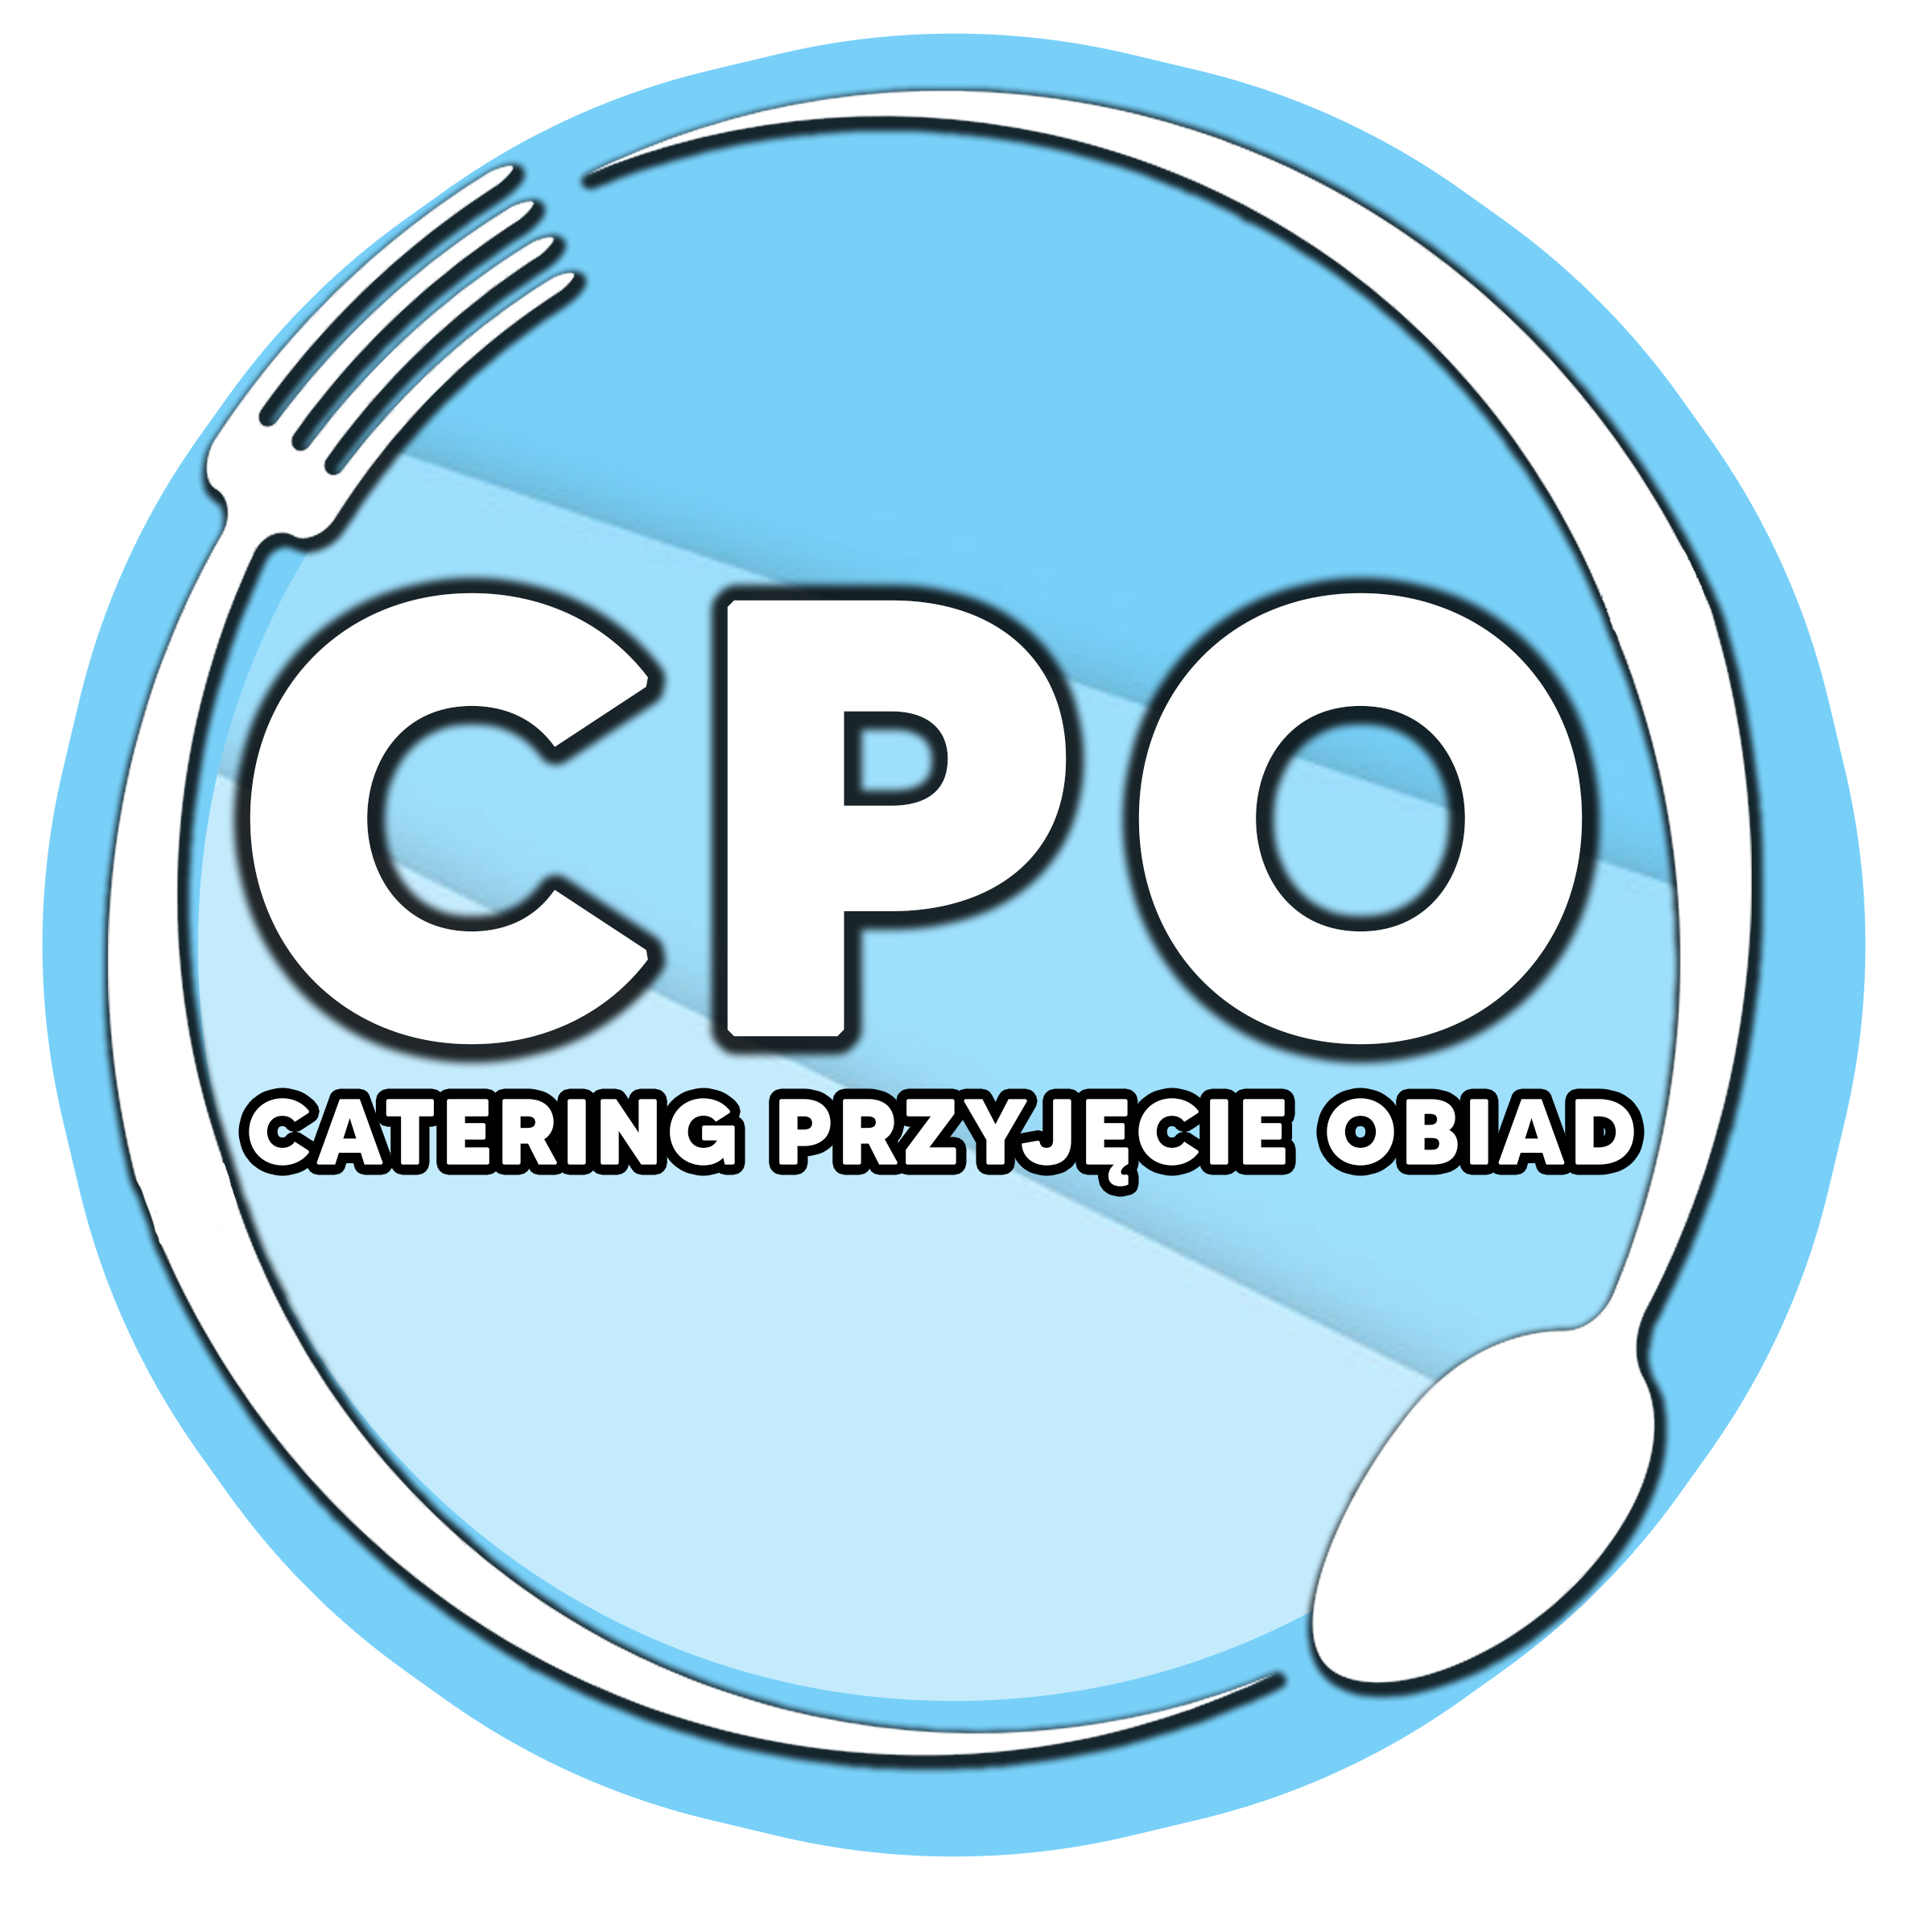 CPO Wieluń – Catering Przyjęcie Obiad